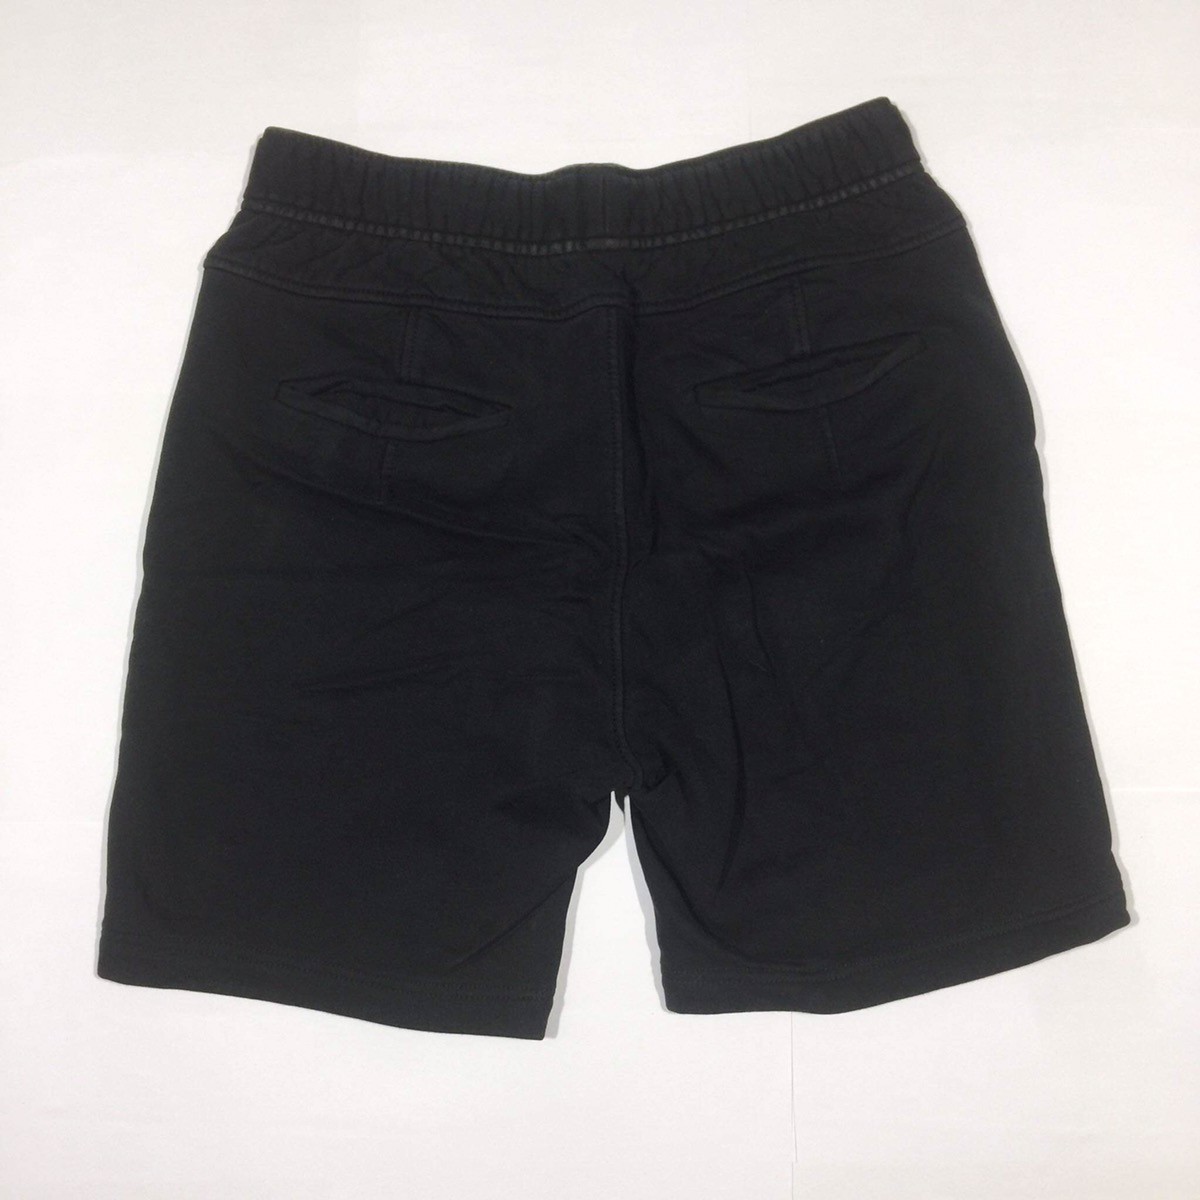 Paneled Shorts - 3